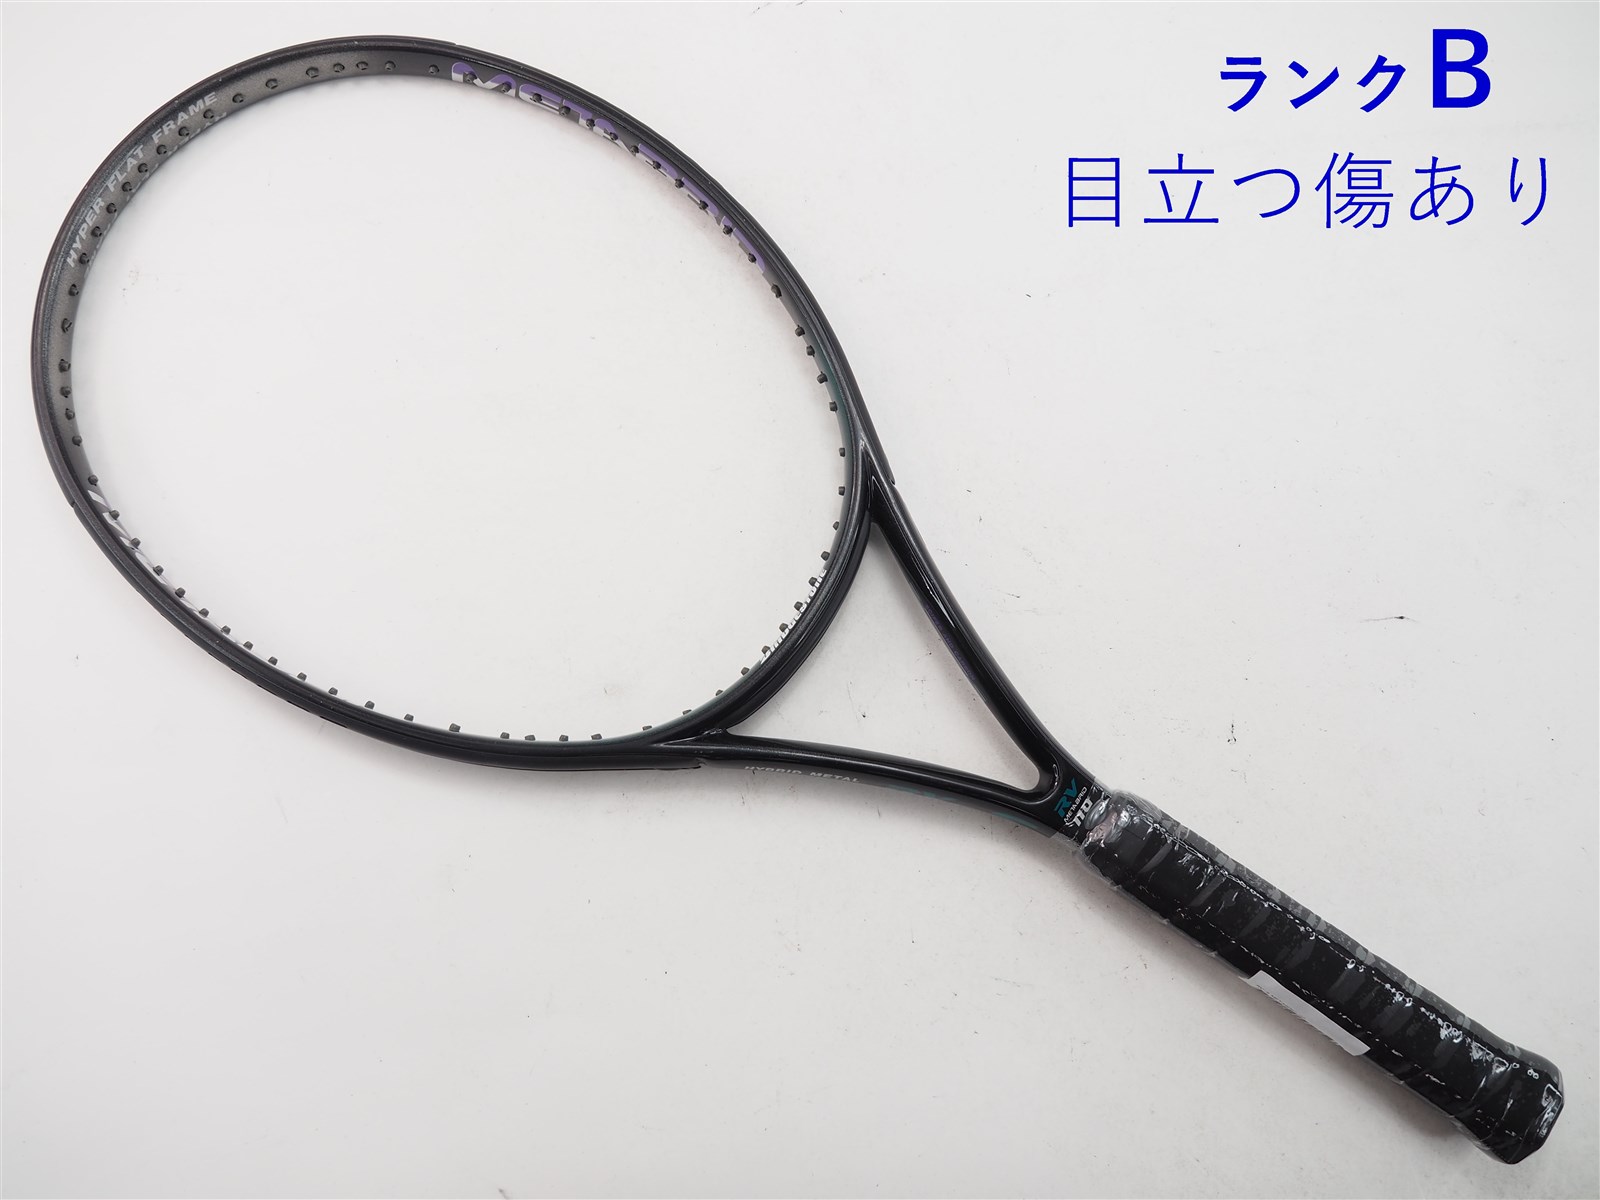 ブリジストンラケット デュアルコイル300 G2 - テニス